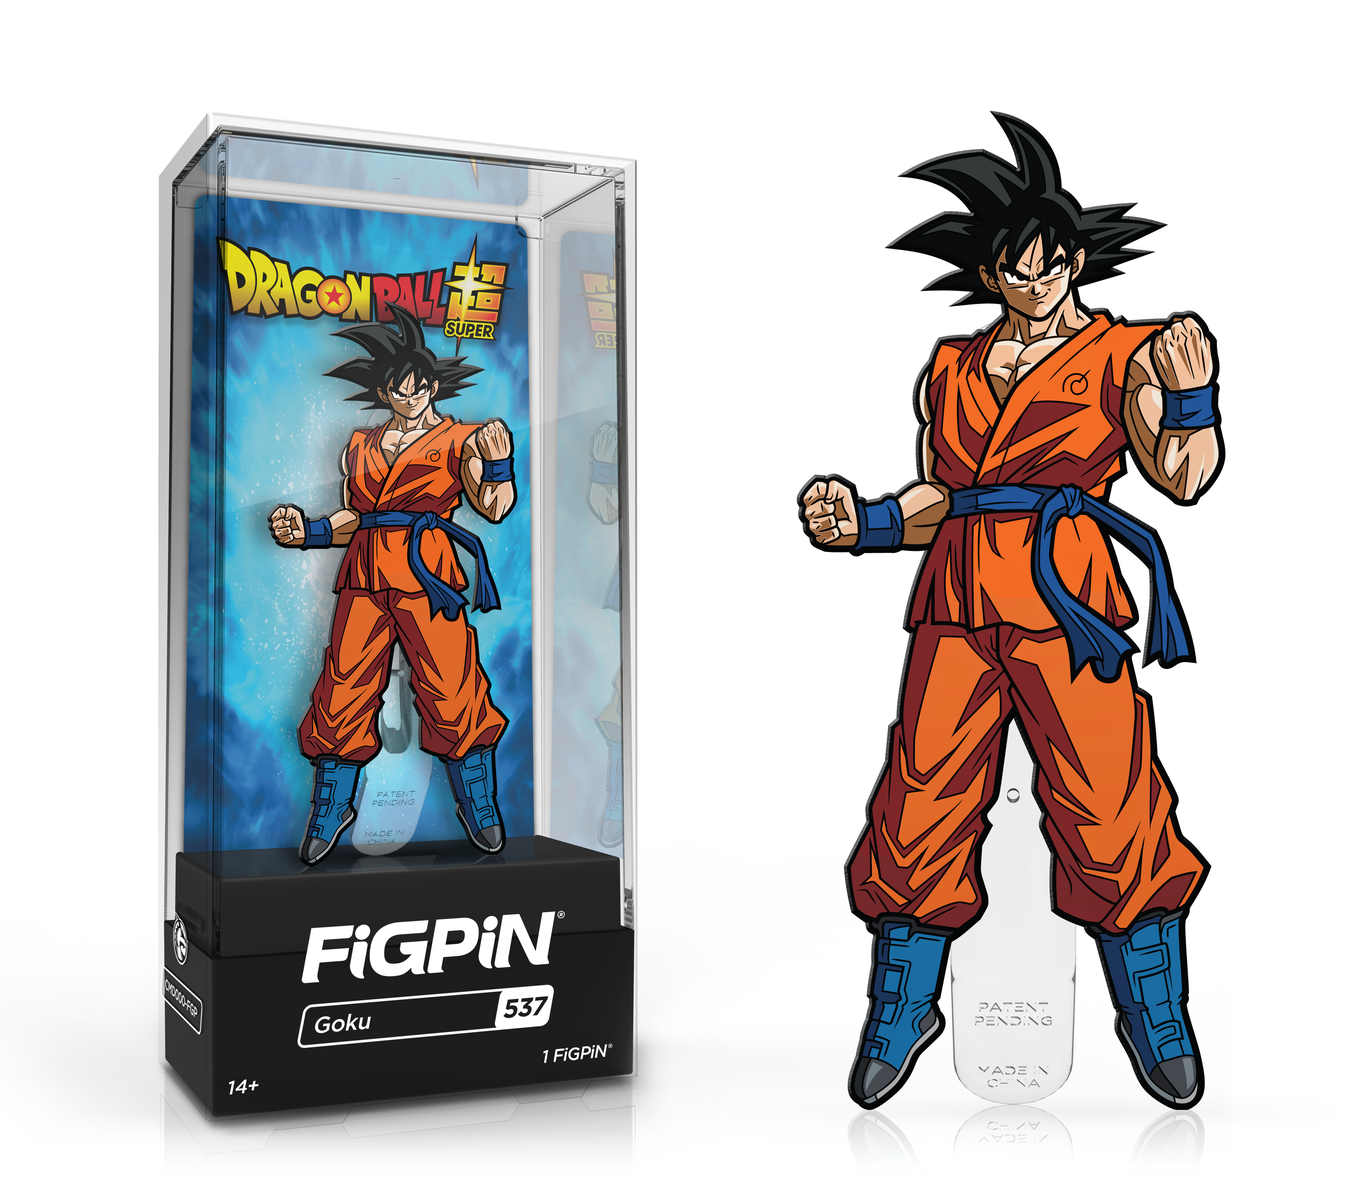 Goku (537)